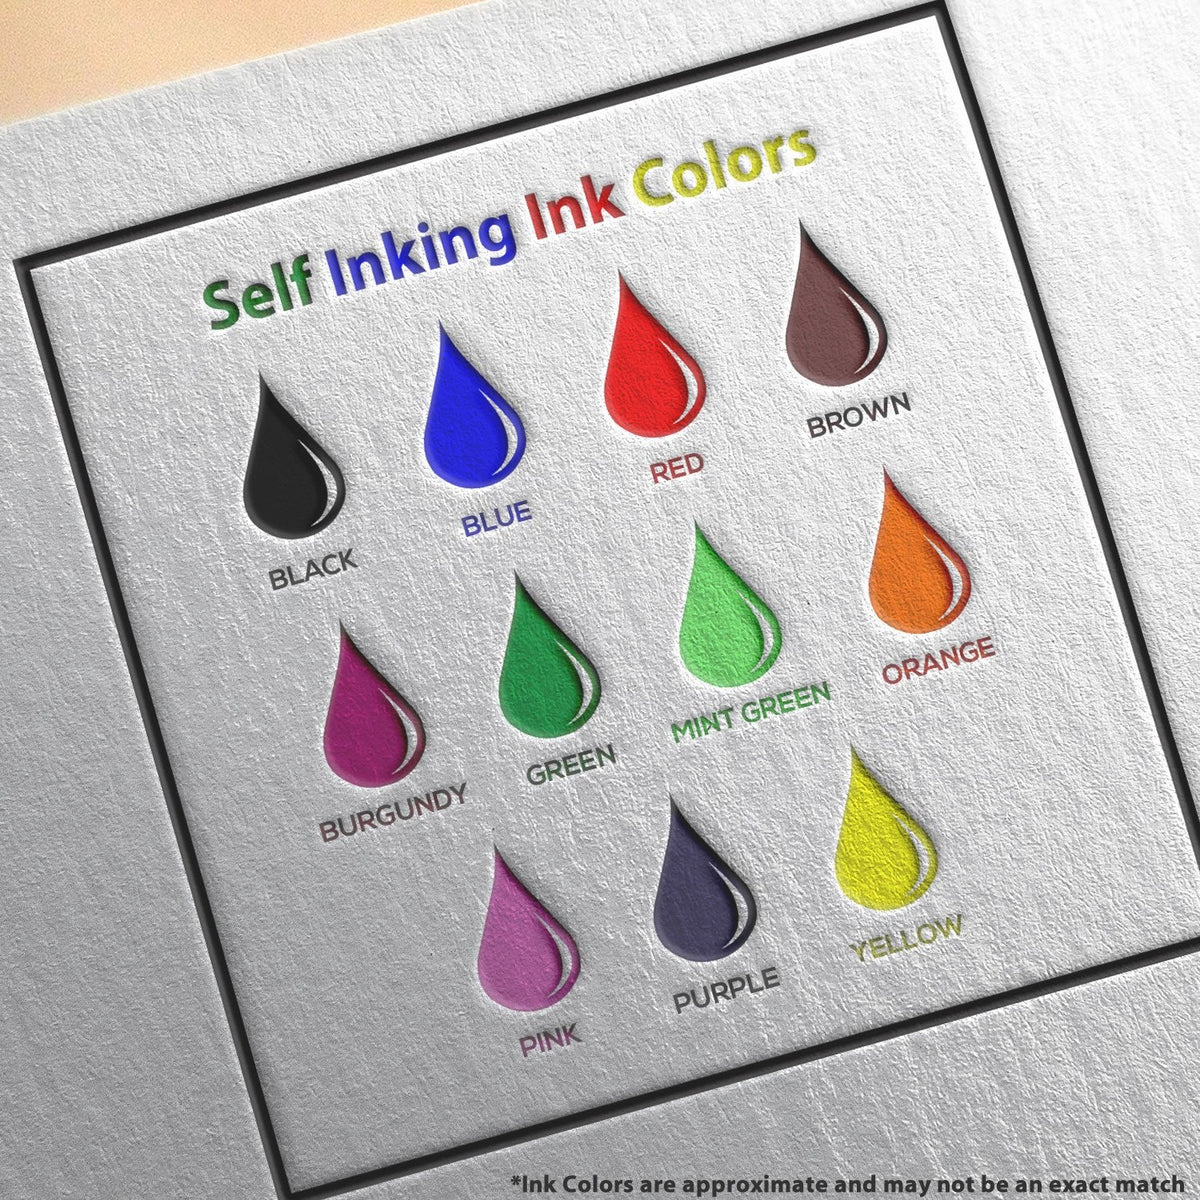 Self-Inking Quarantine Until Stamp Ink Color Options